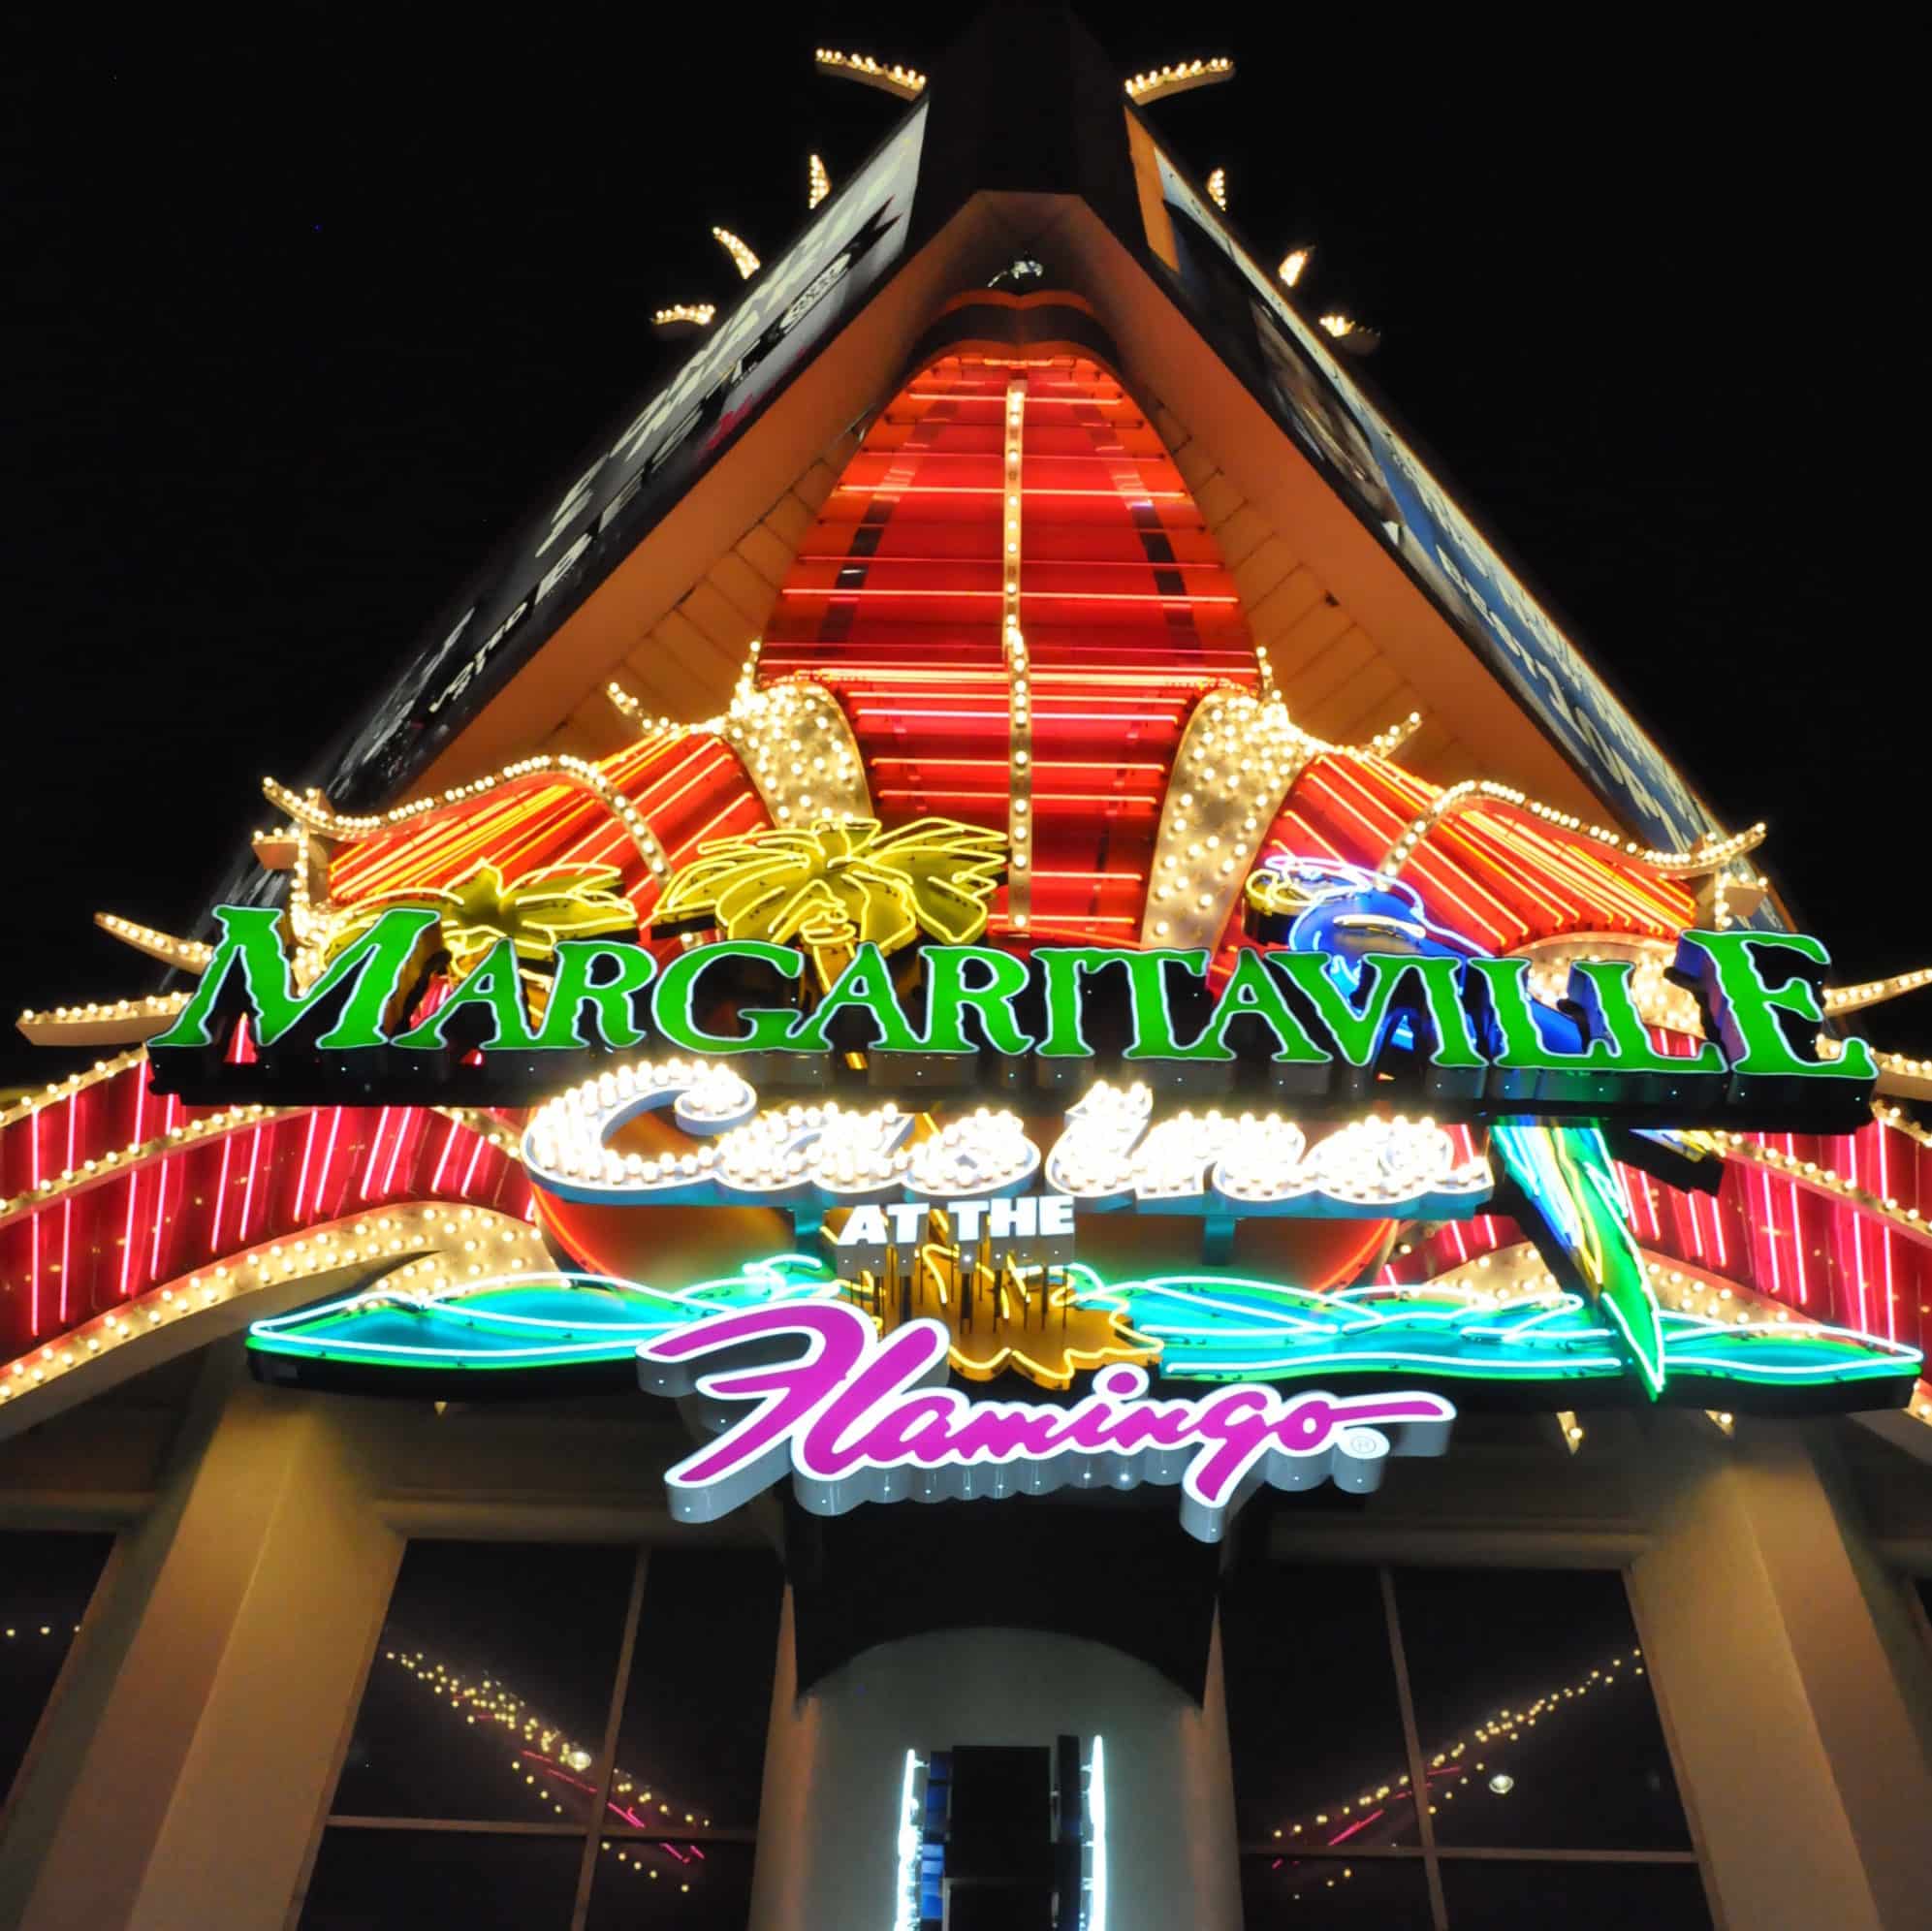 Margaritaville casino sign